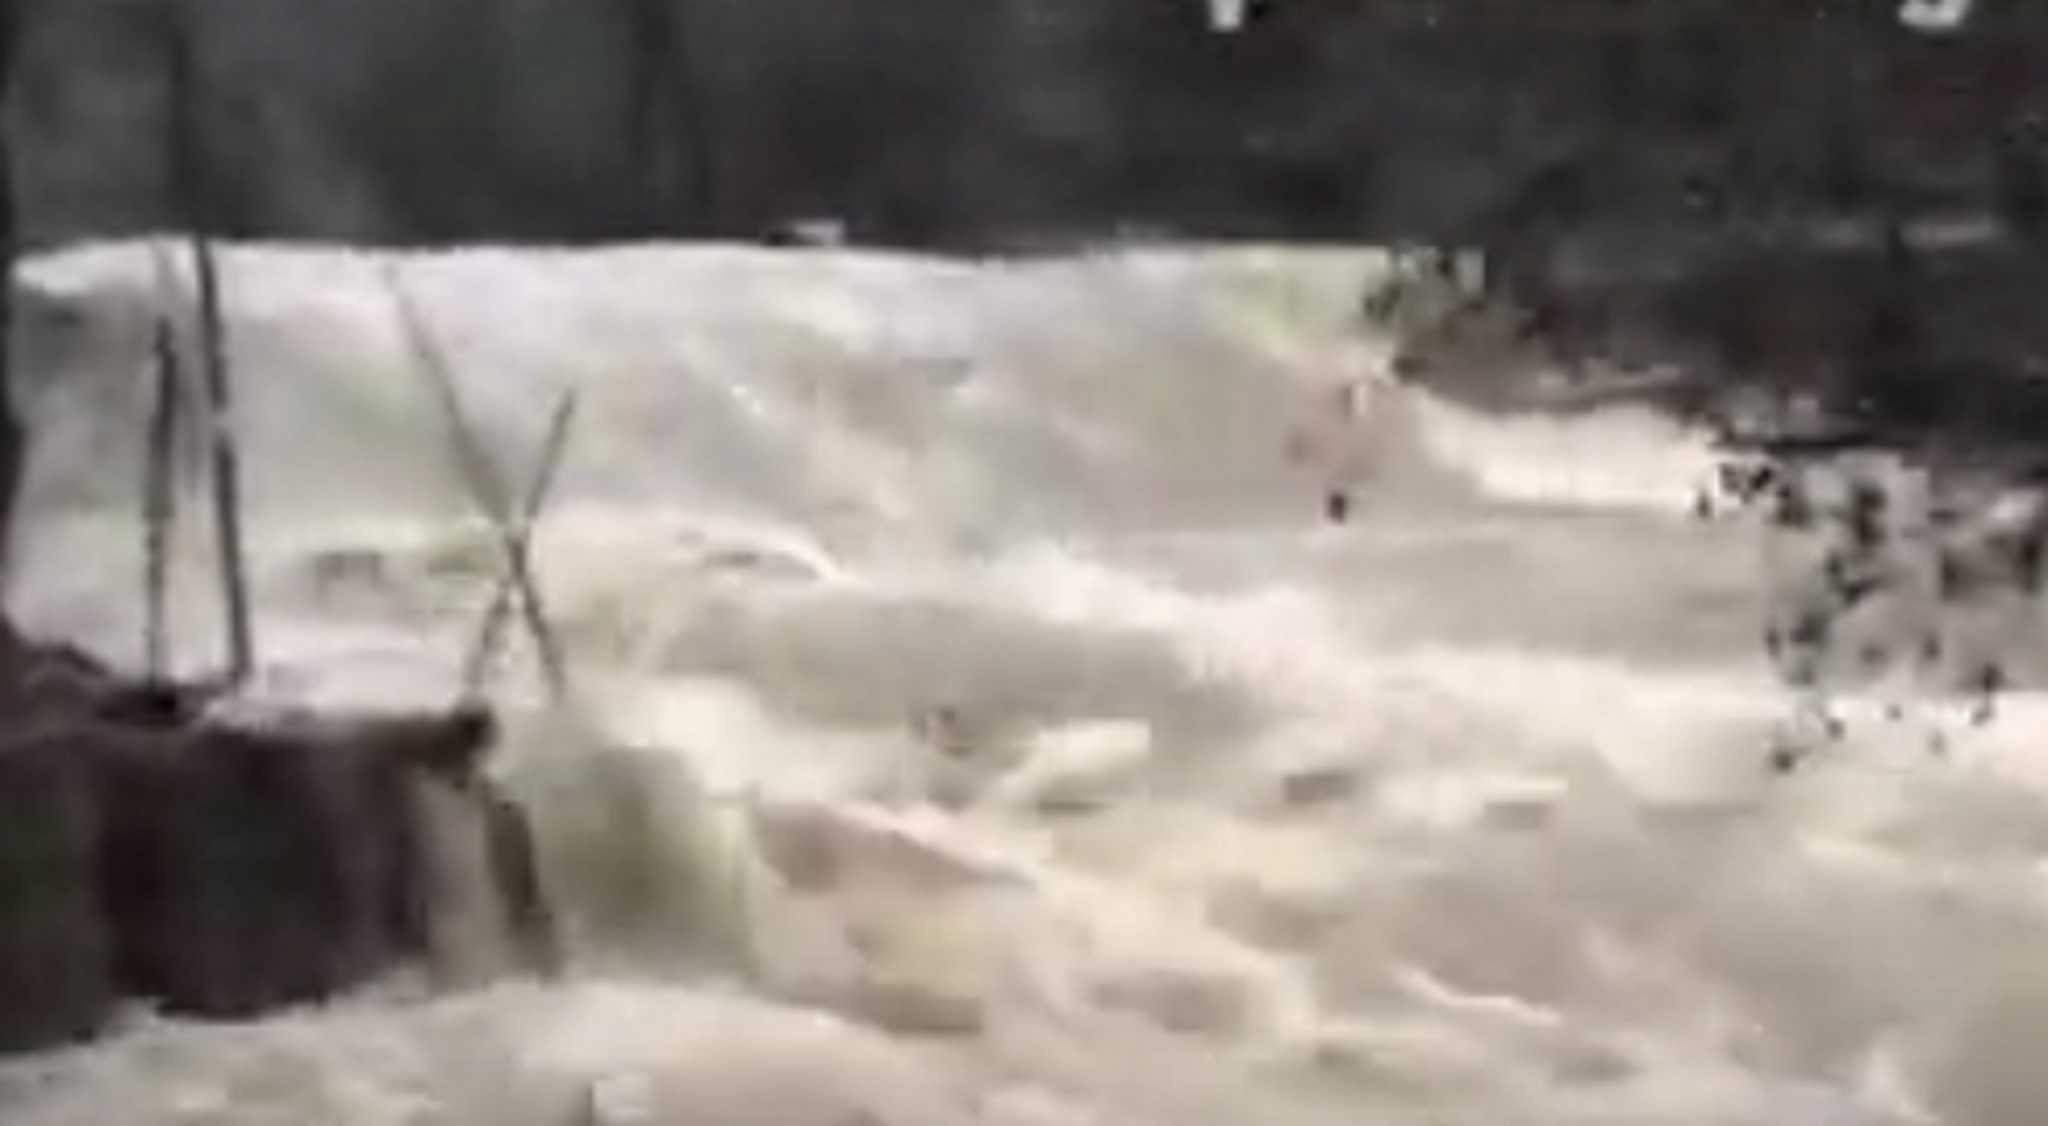 Καιρός – Σπάνιες εικόνες στον ποταμό Βοϊδομάτη – Δείτε βίντεο με τα ορμητικά νερά